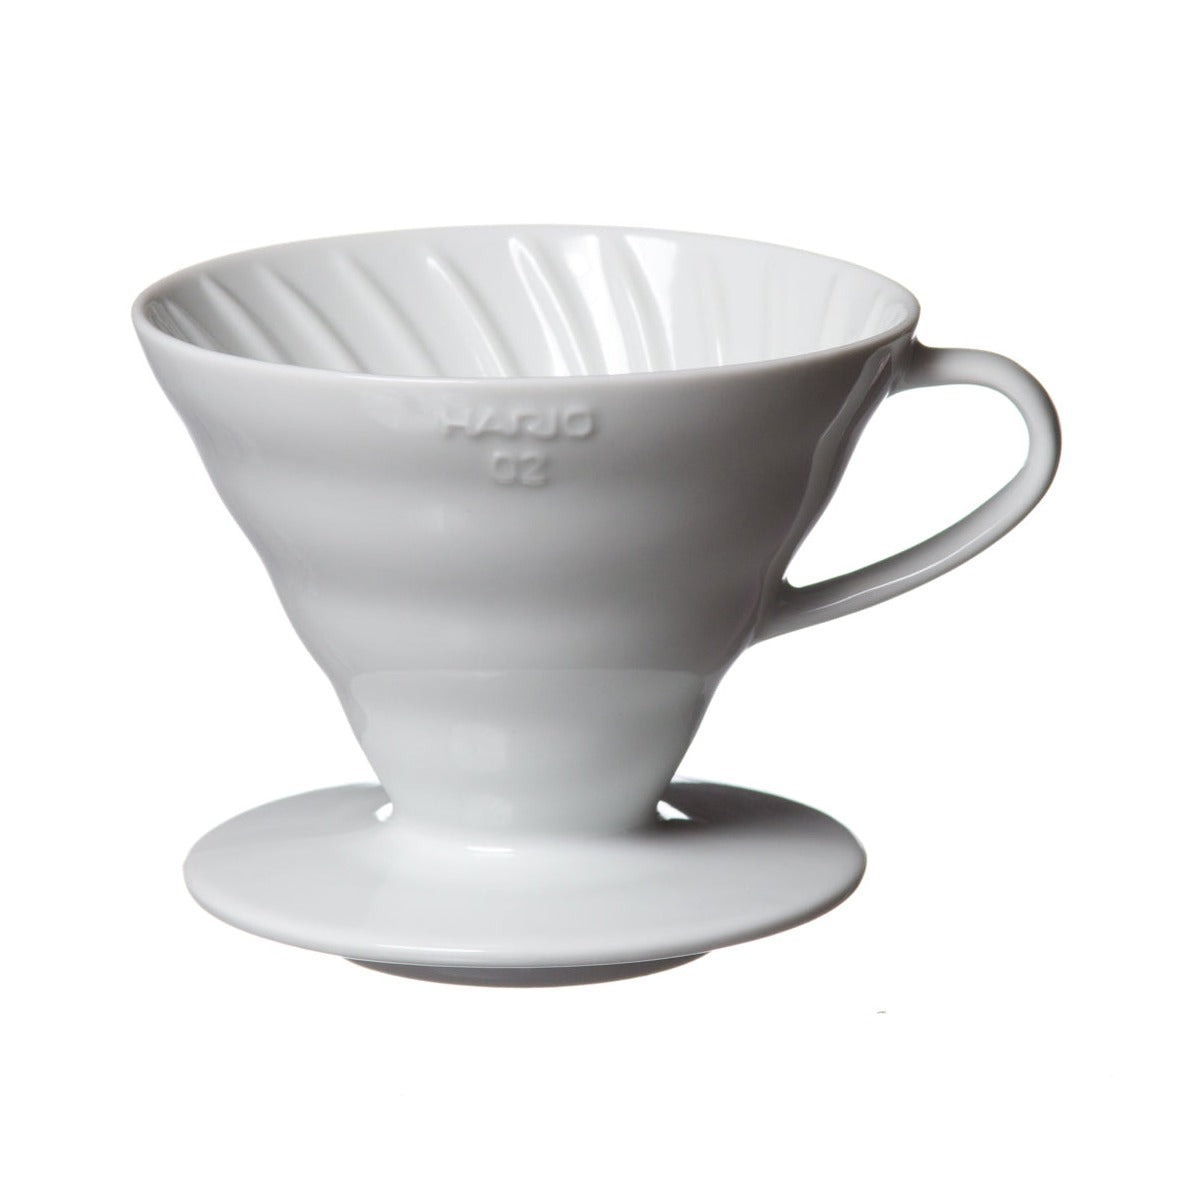 Hario V60 coffee dripper in white ceramic. 02 size